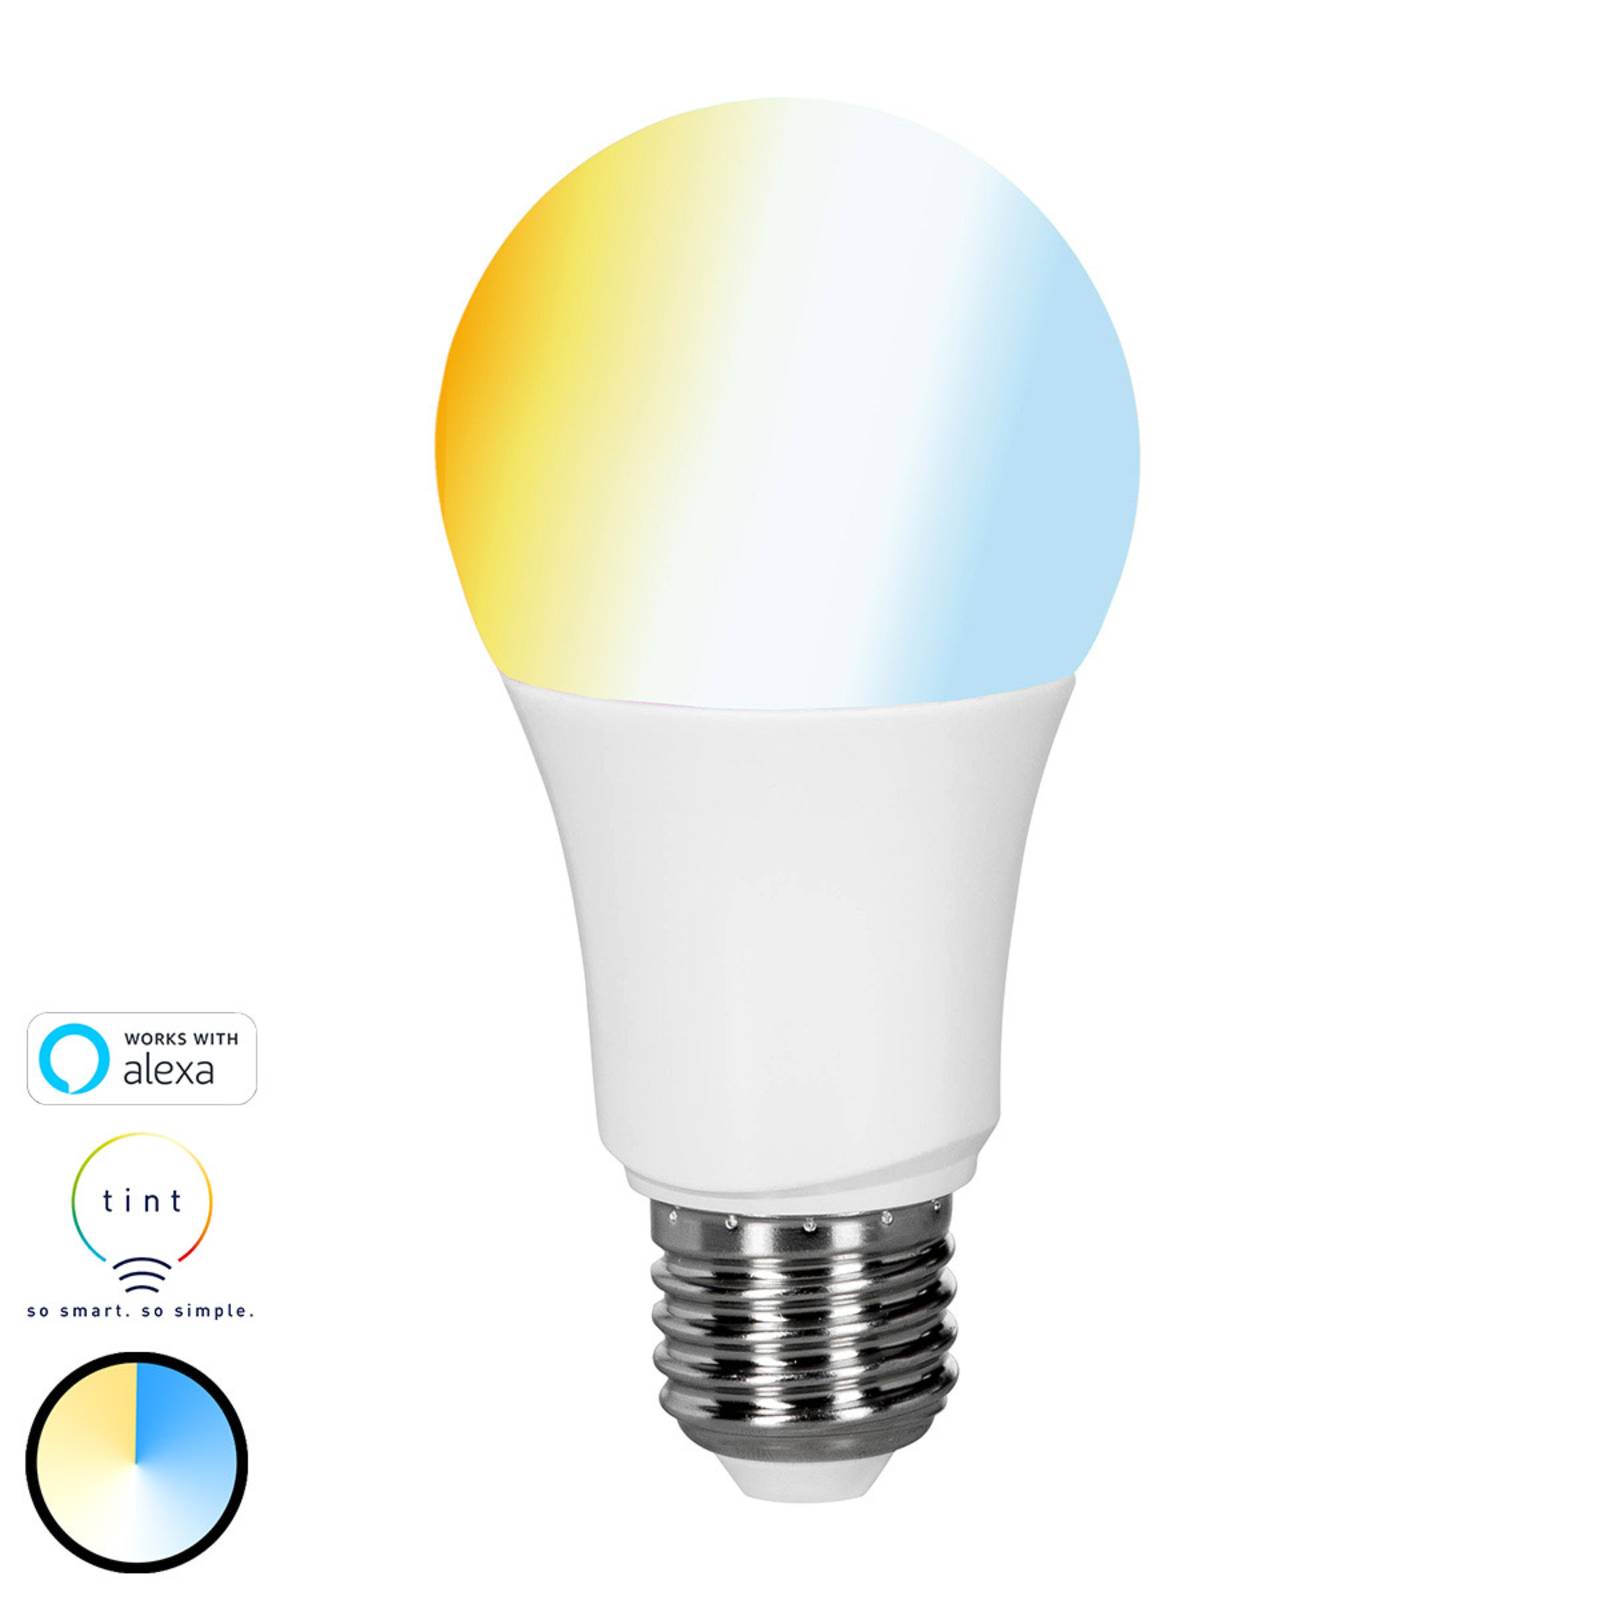 Müller Licht tint white ampoule LED E27 9 W